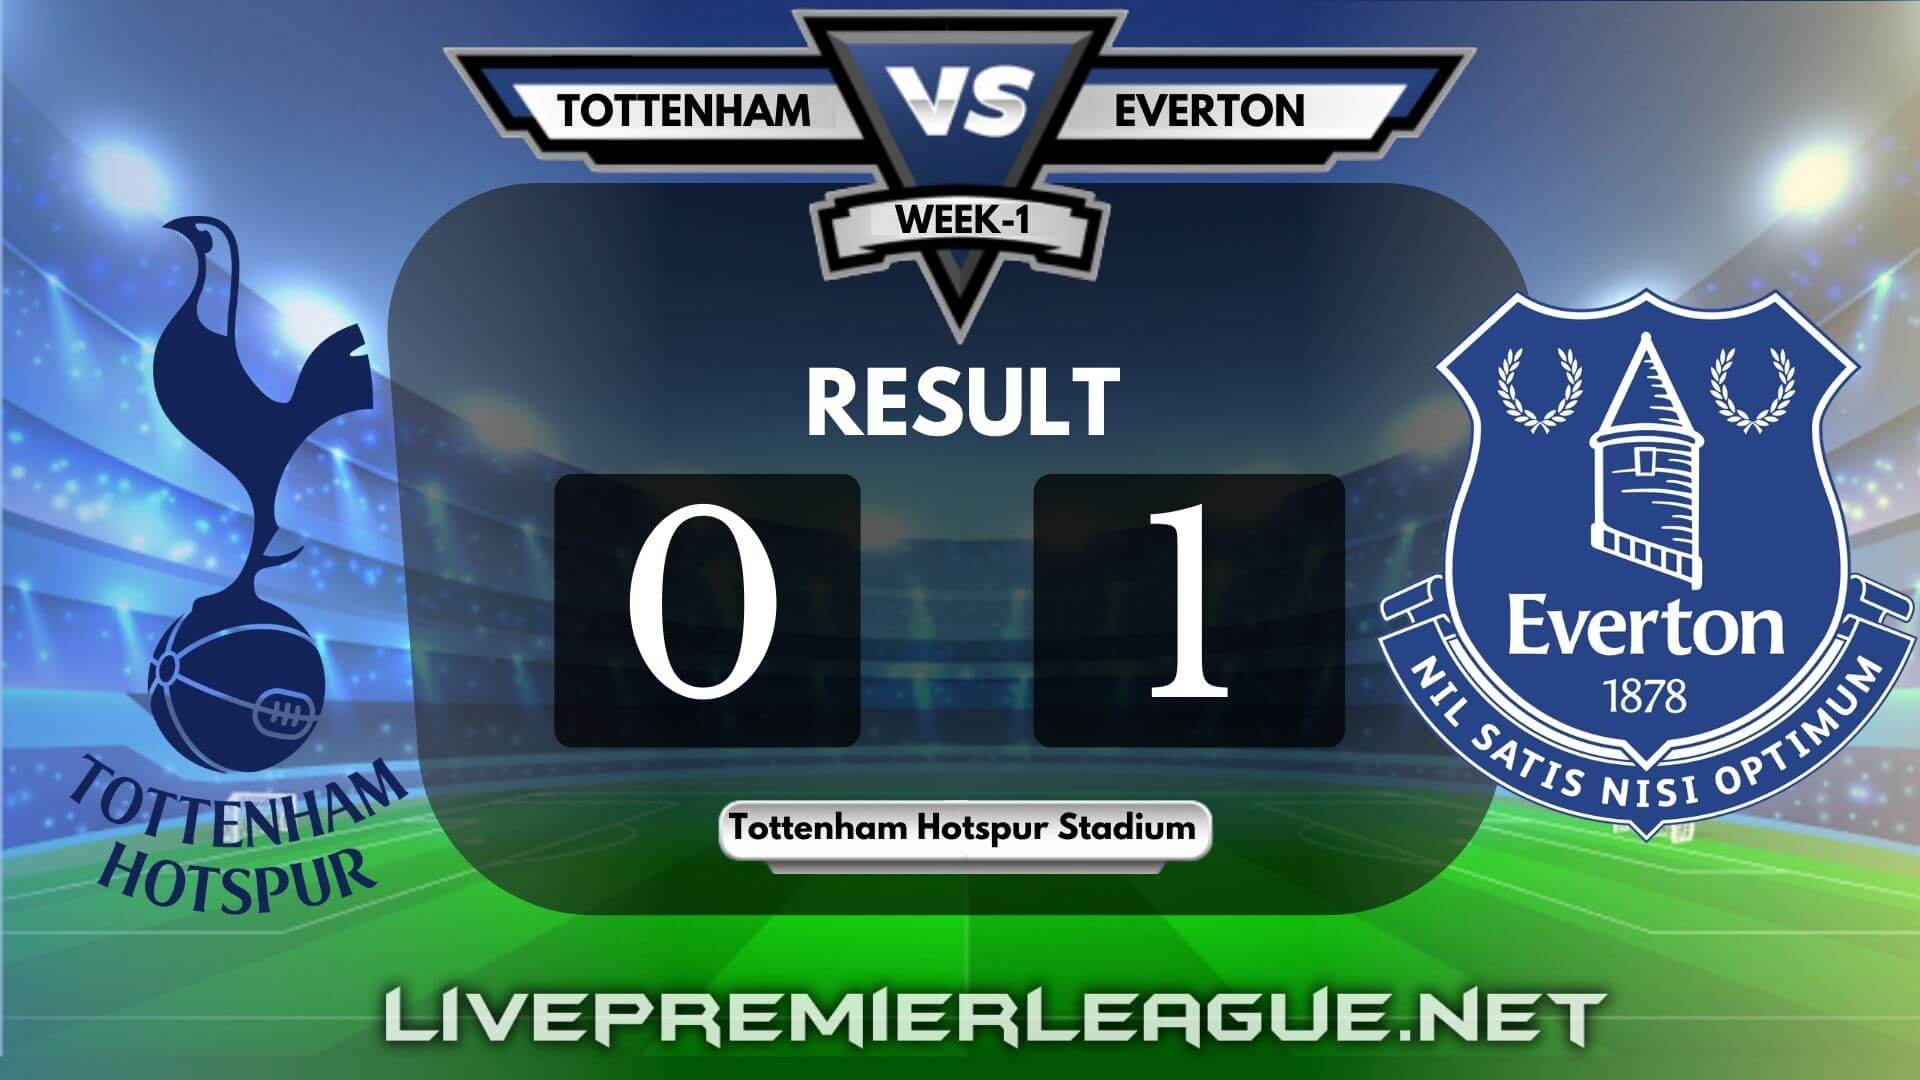 Tottenham Hotspur Vs Everton | Week 1 Result 2020